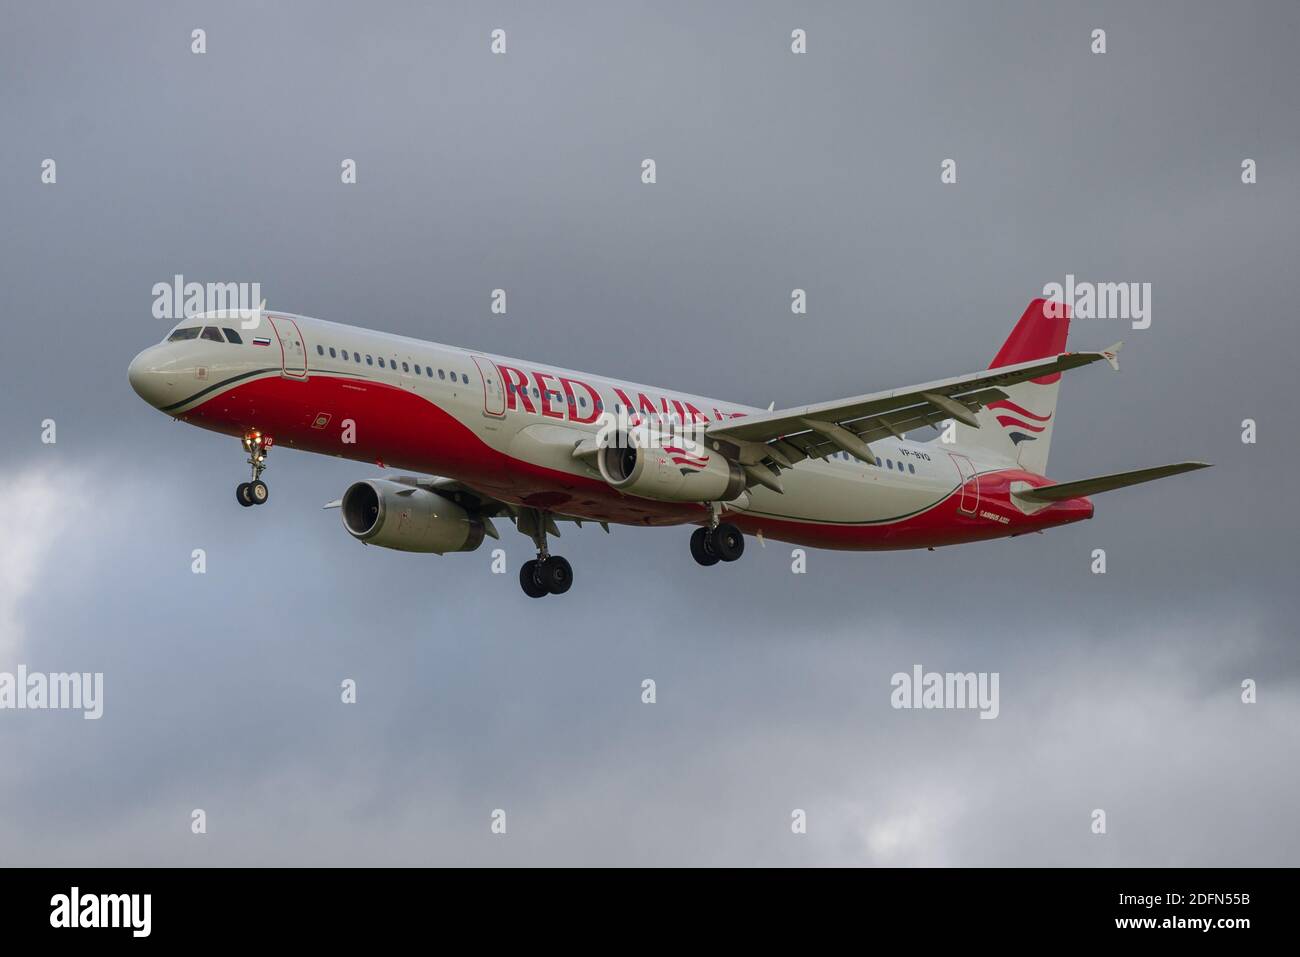 SAN PIETROBURGO, RUSSIA - 28 OTTOBRE 2020: Airbus A321-200 (VP-BVO) la linea aerea delle Red Wings da vicino contro un cielo scuro Foto Stock